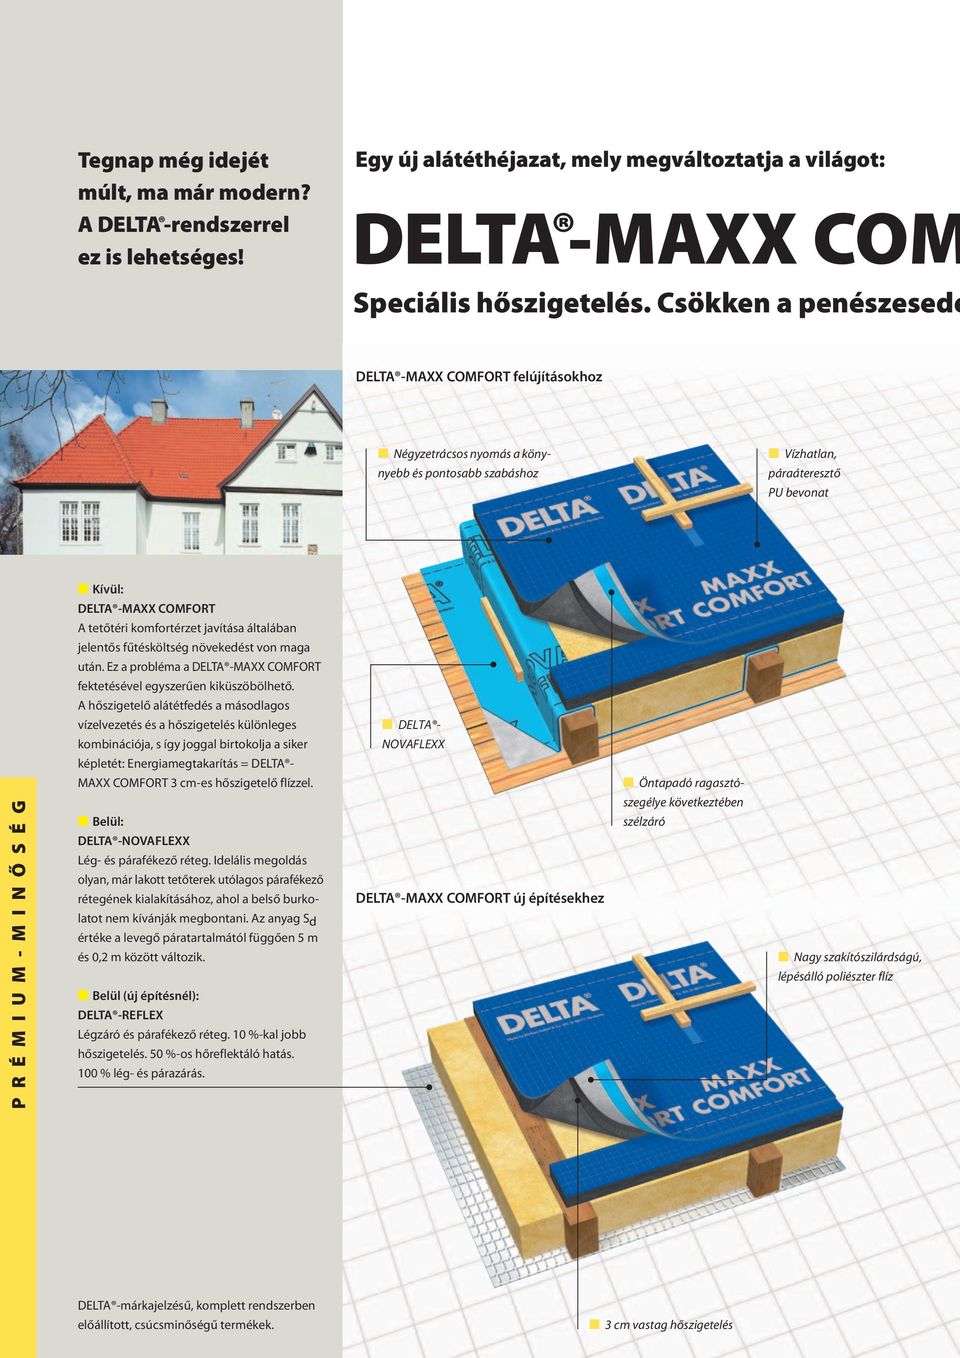 javítása általában jelentős fűtésköltség növekedést von maga után. Ez a probléma a DELTA -MAXX COMFORT fektetésével egyszerűen kiküszöbölhető.